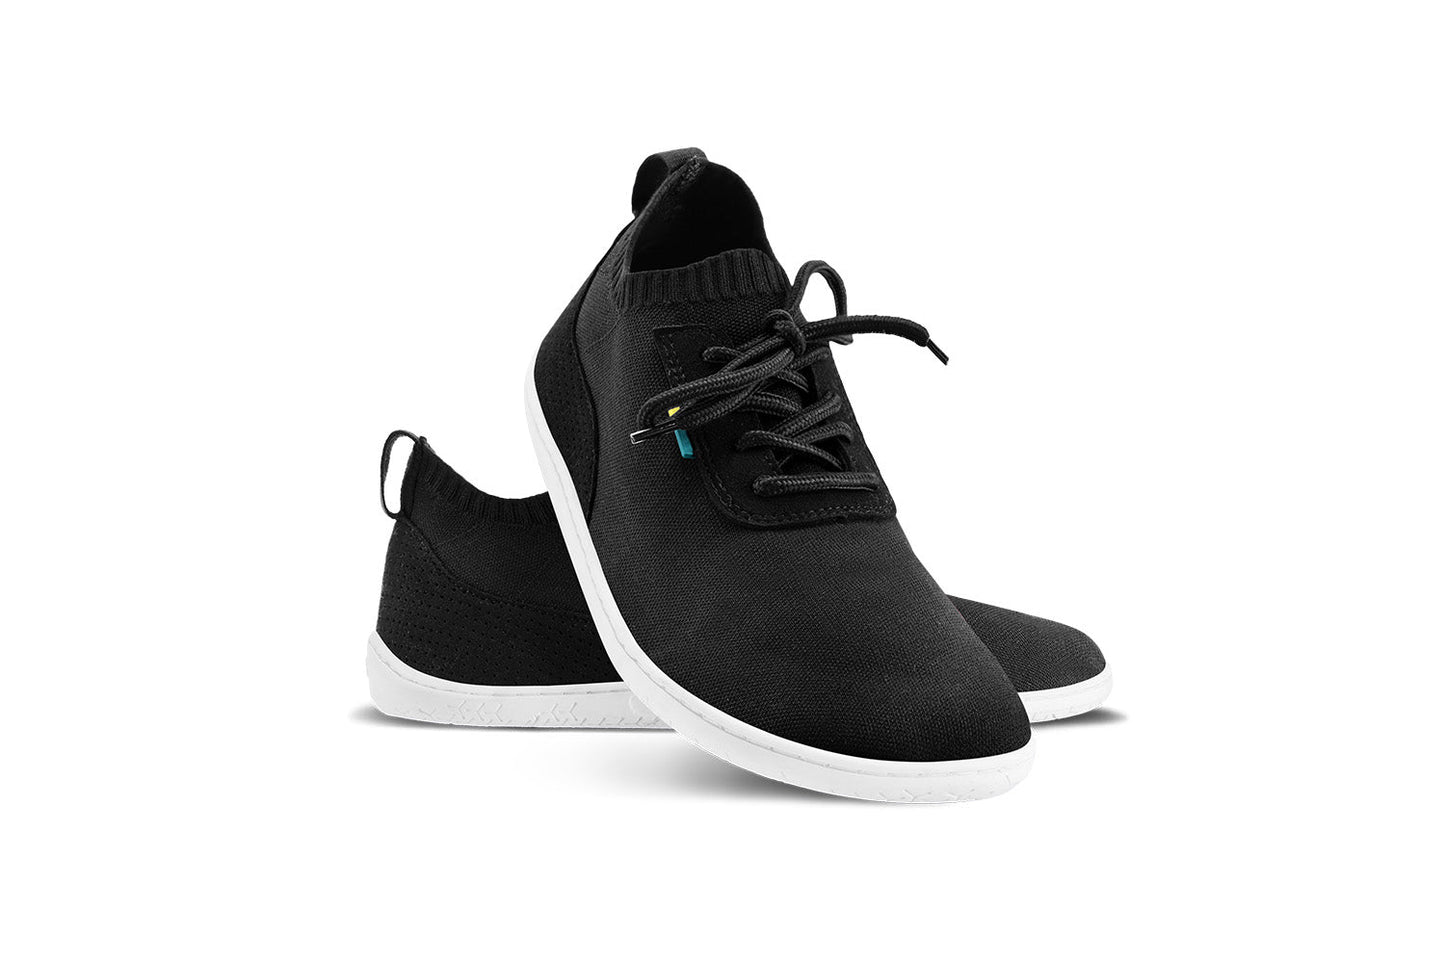 Barefoot Sneakers - Be Lenka Stride - Black & White 1 OzBarefoot Australia